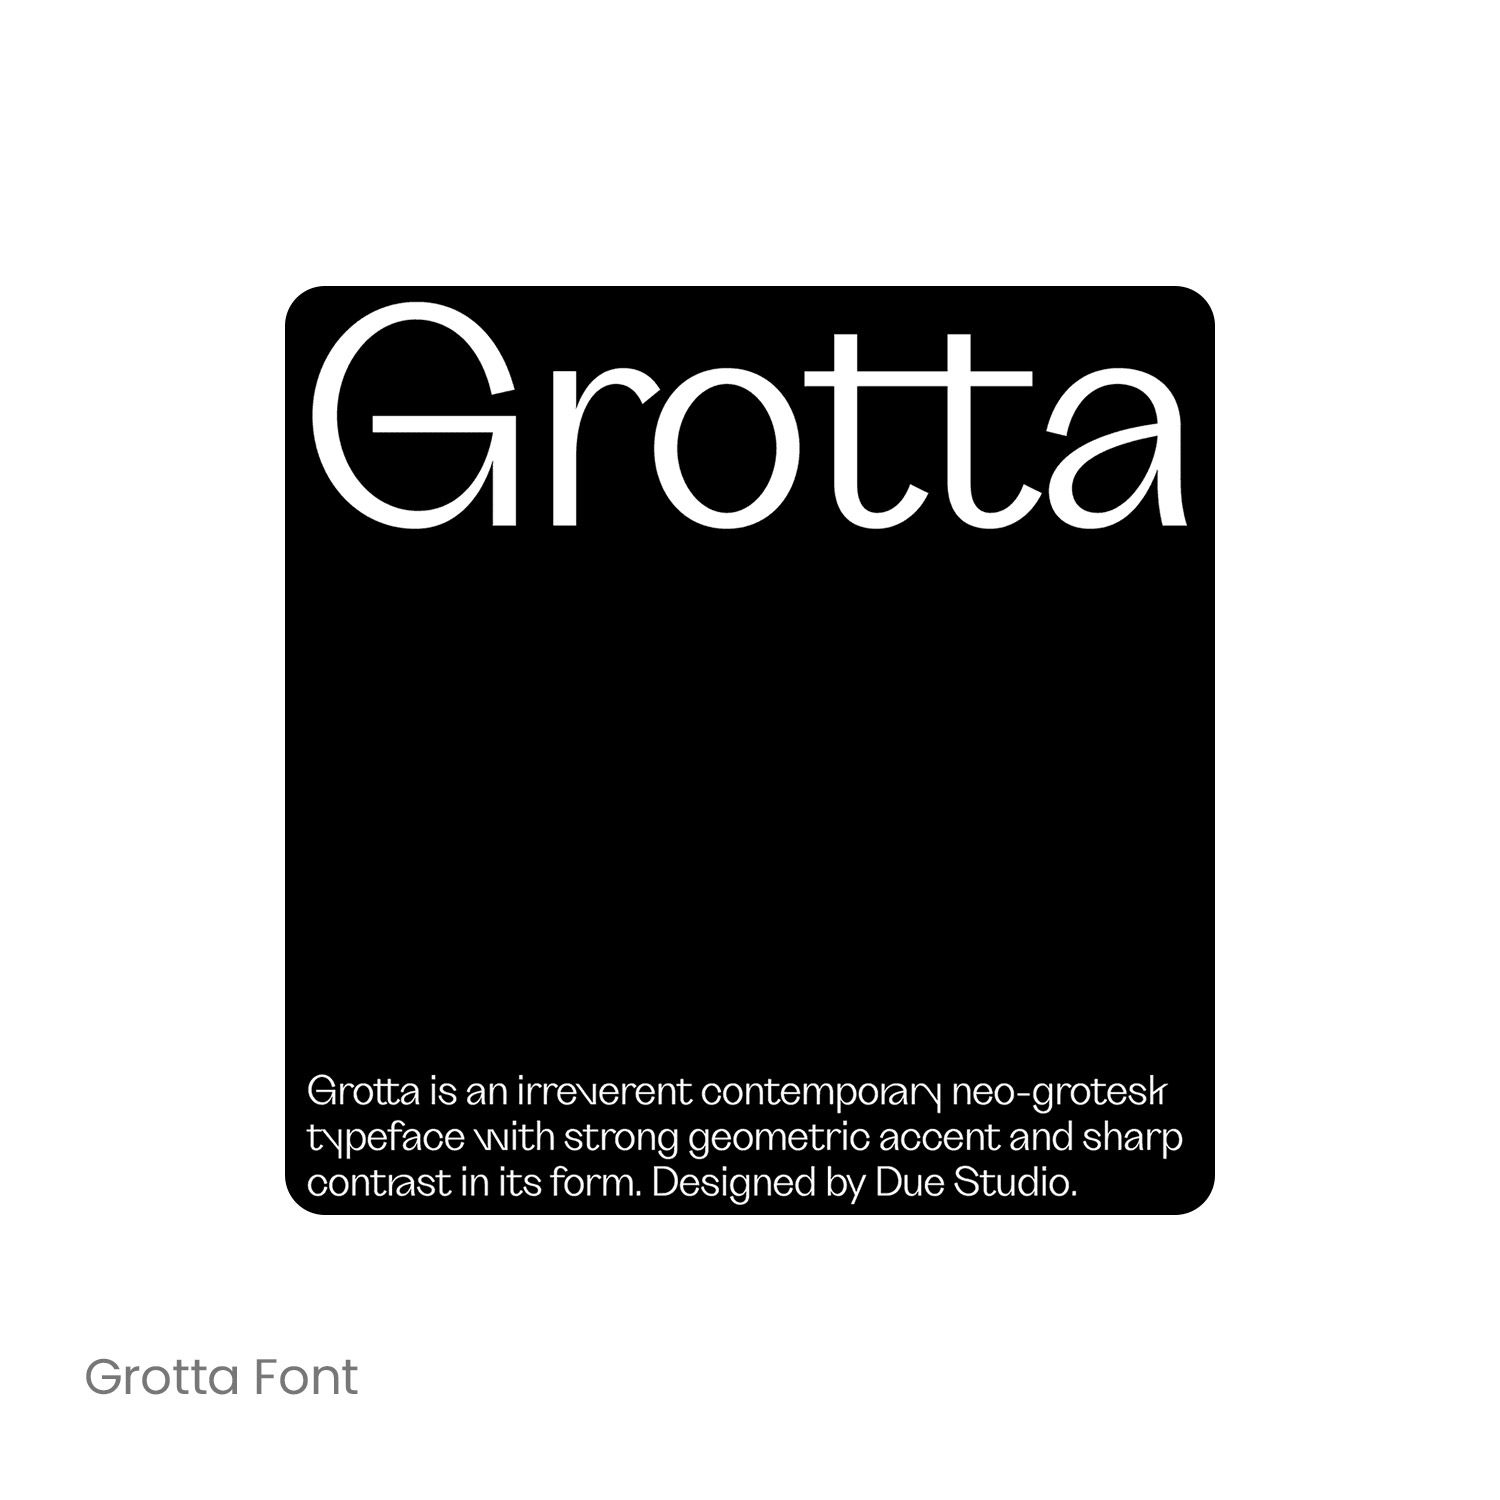 Grotta 复古衬线英文字体品牌logo标识排版版式字体安装下载mac